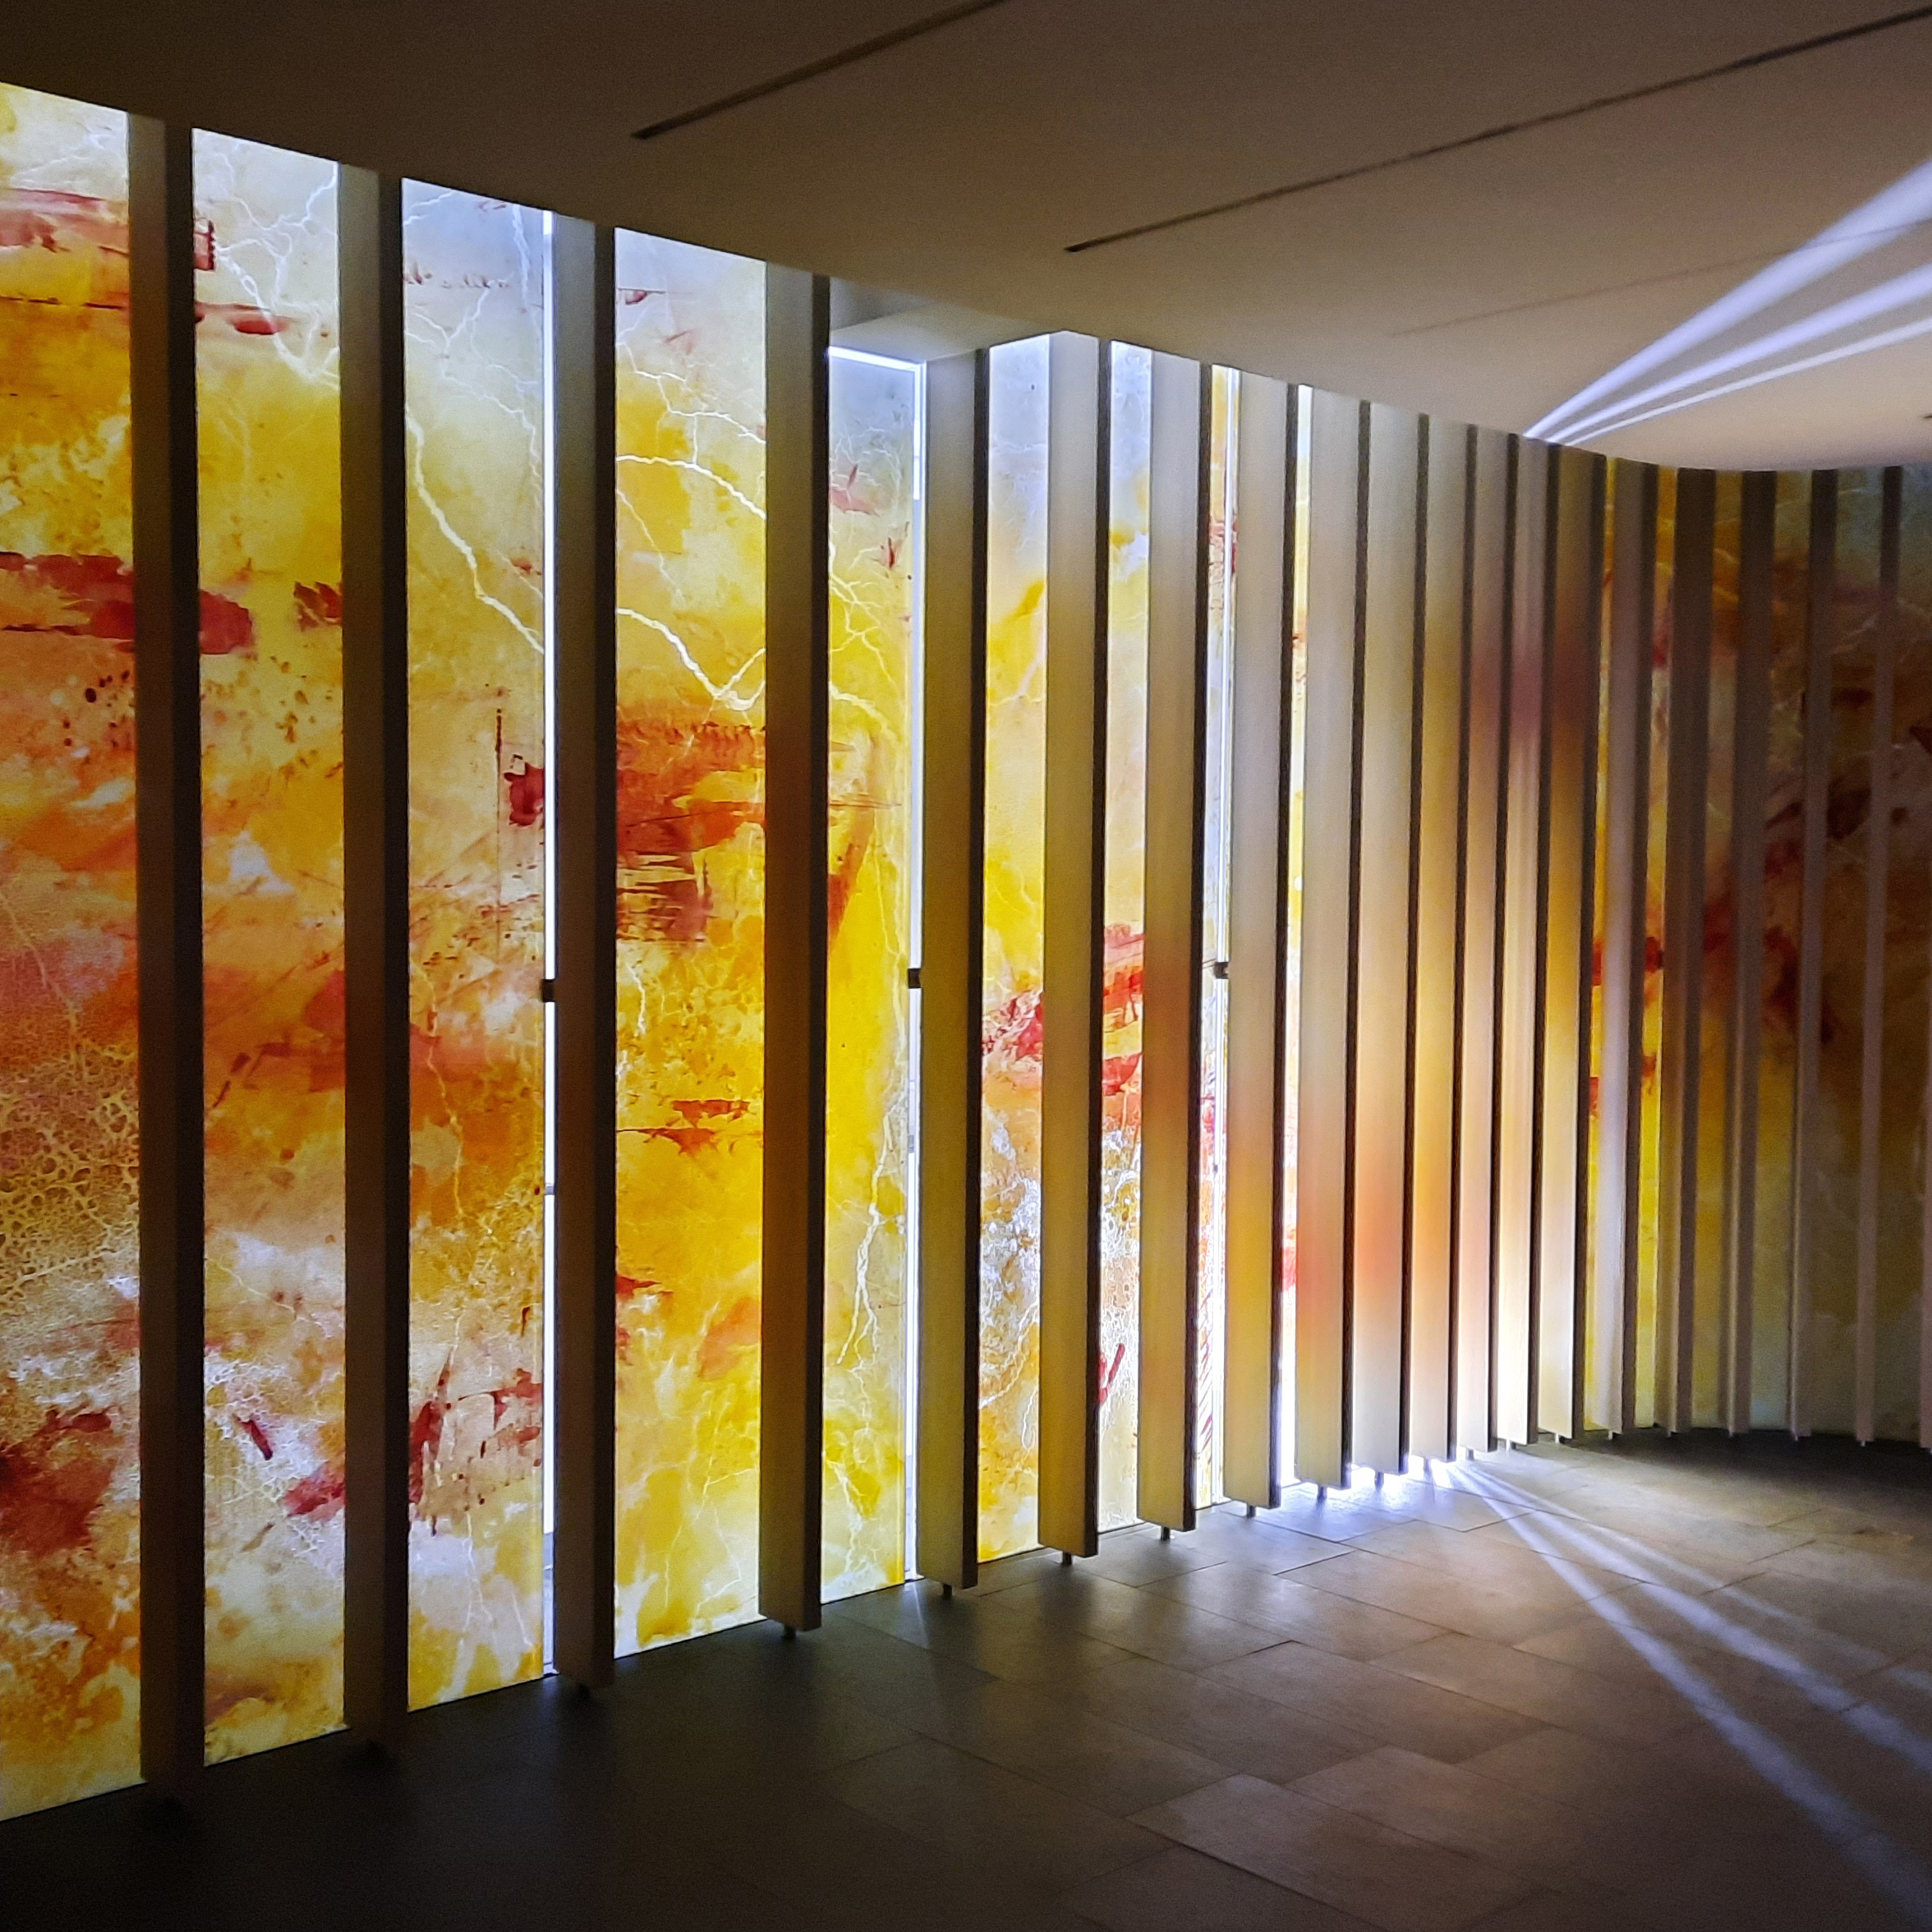 Stehende beleuchtete Glasplatten mit gelb-roten Farbmustern, erzeugen eine warme, atmosphärische Beleuchtung im Raum.